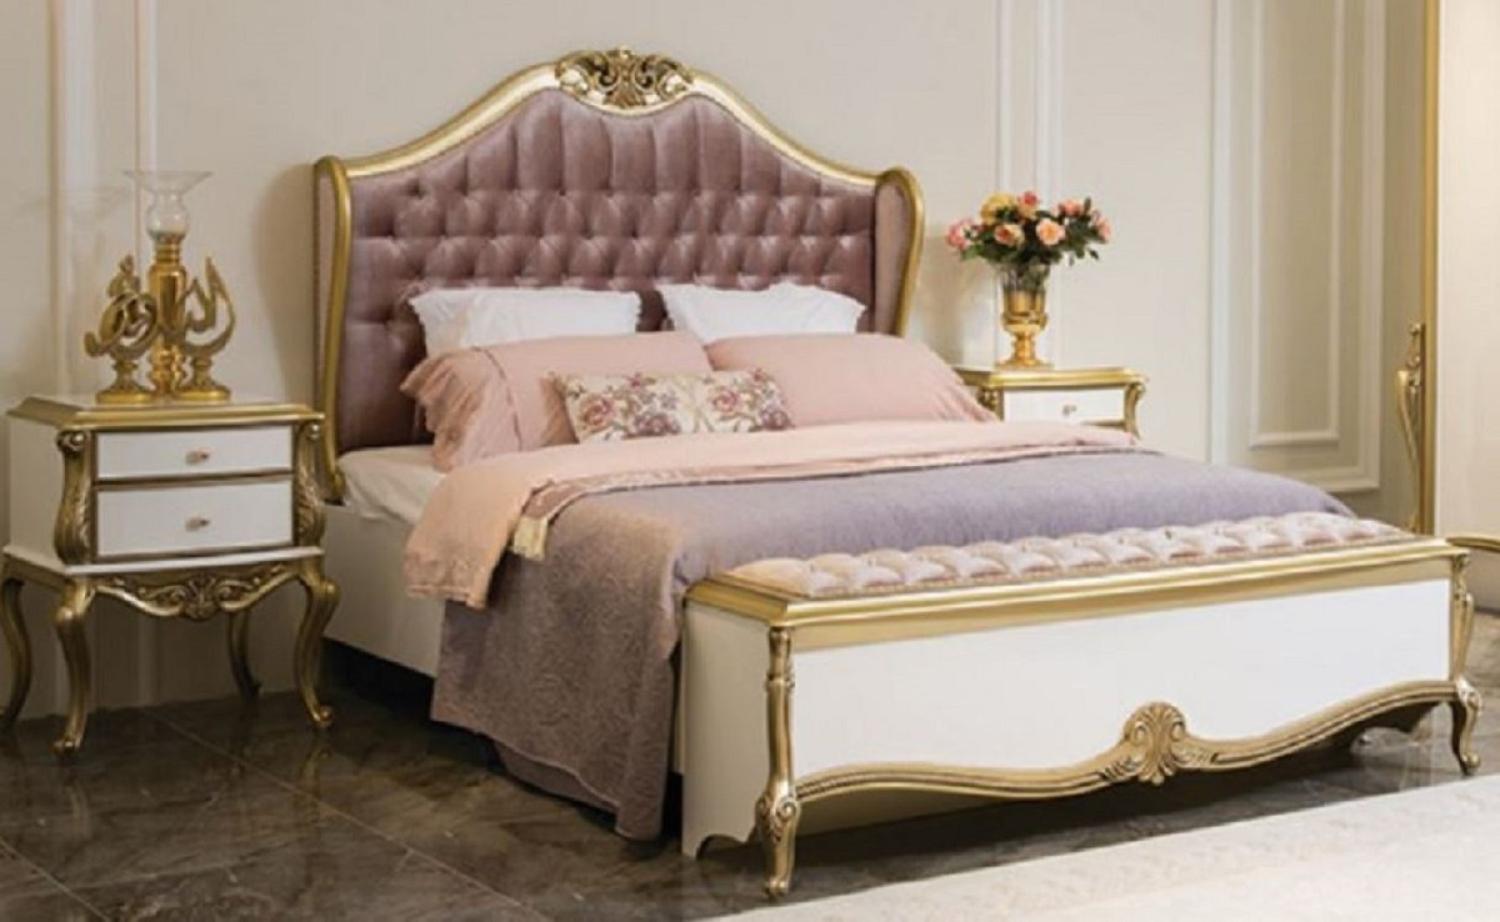 Casa Padrino Luxus Barock Schlafzimmer Set Lila / Rosa / Weiß / Gold - 1 Doppelbett mit Kopfteil & 2 Nachttische - Barock Schlafzimmer Möbel - Edel & Prunkvoll Bild 1